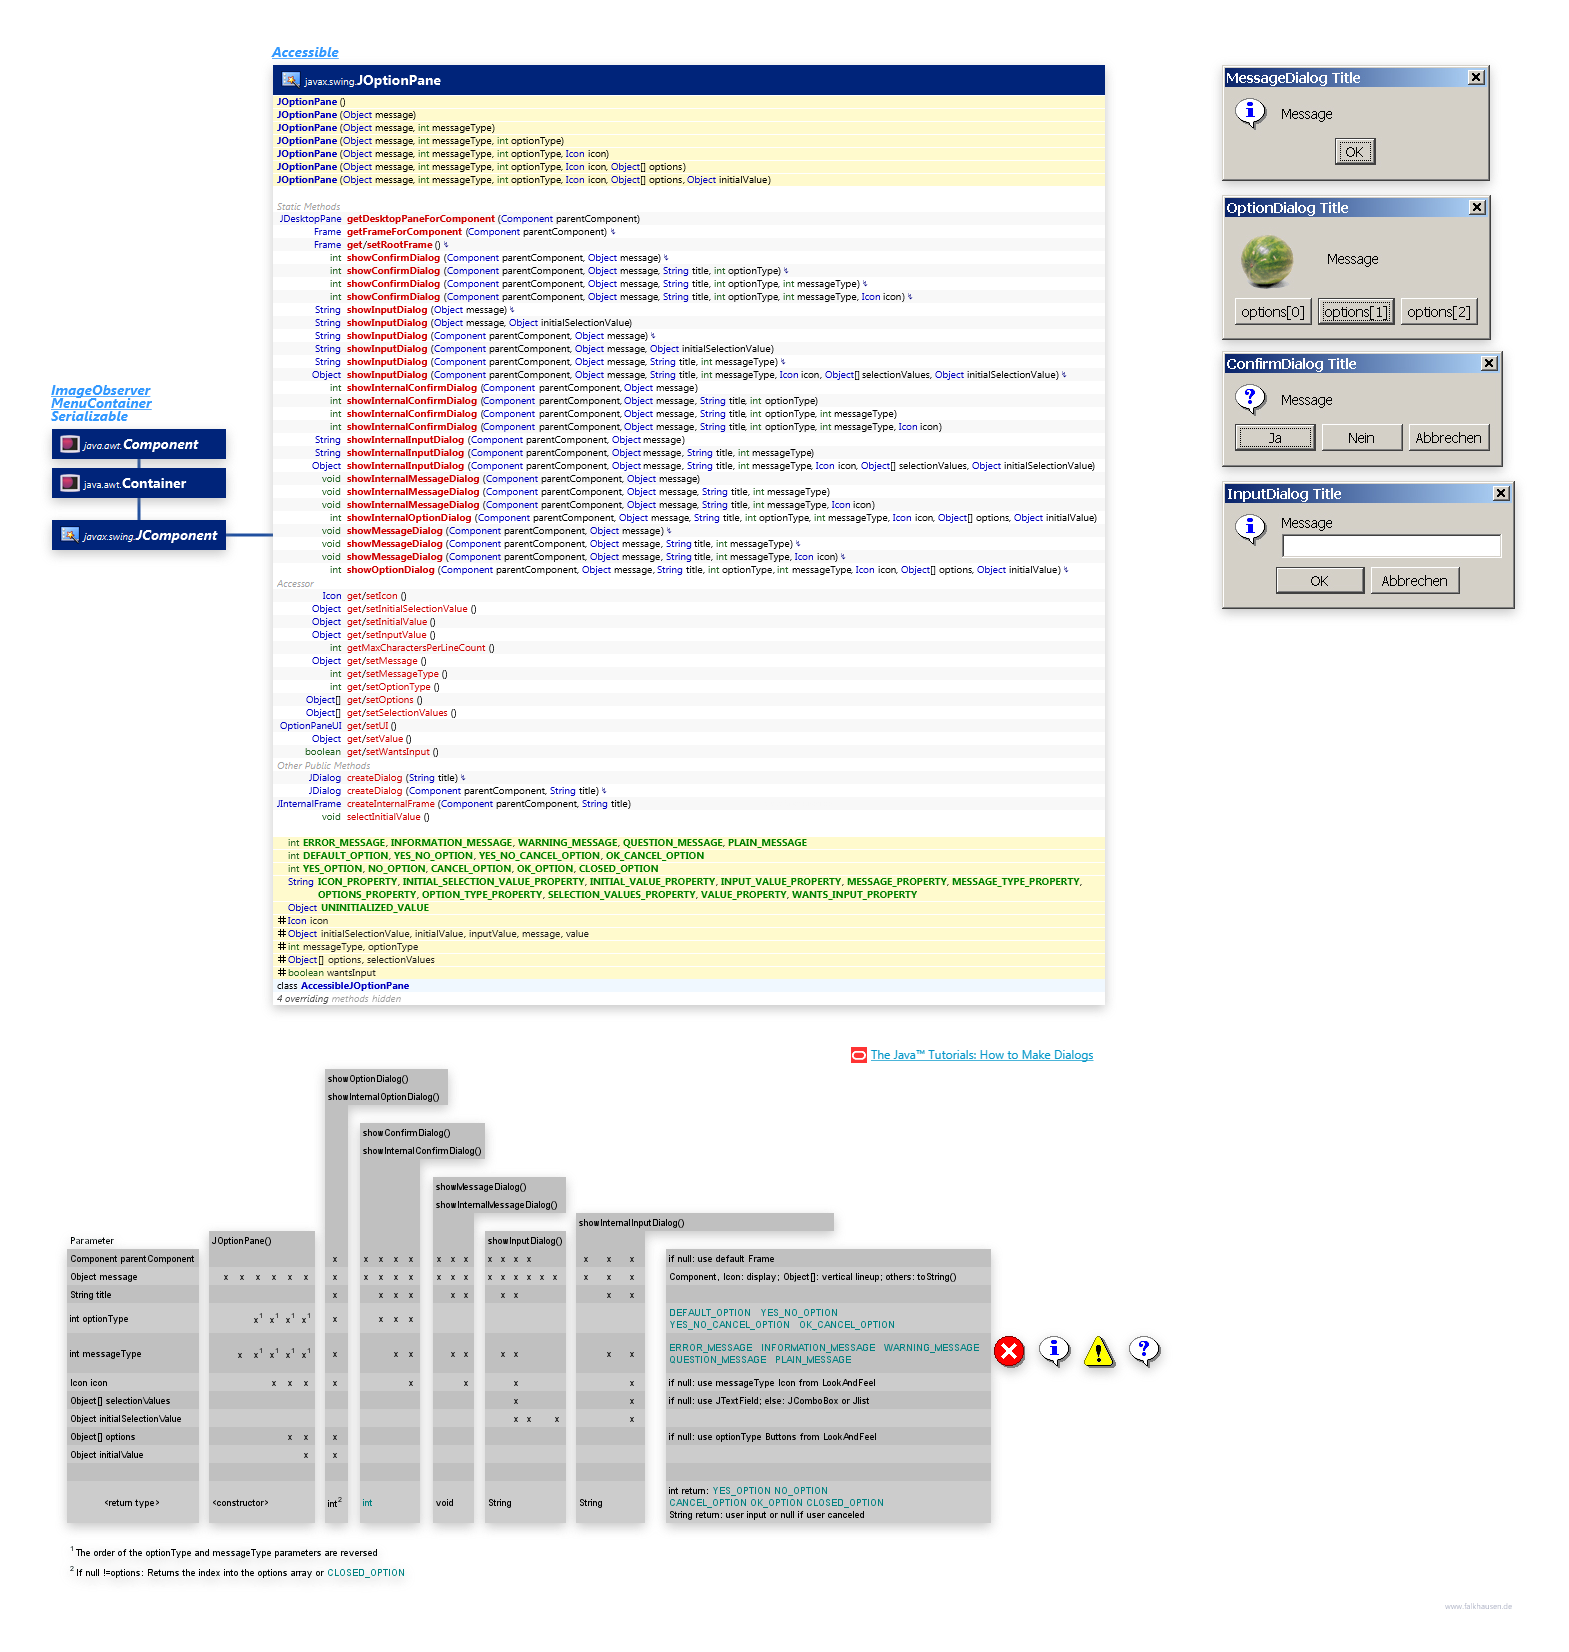 JOptionPane class diagram and api documentation for Java 7